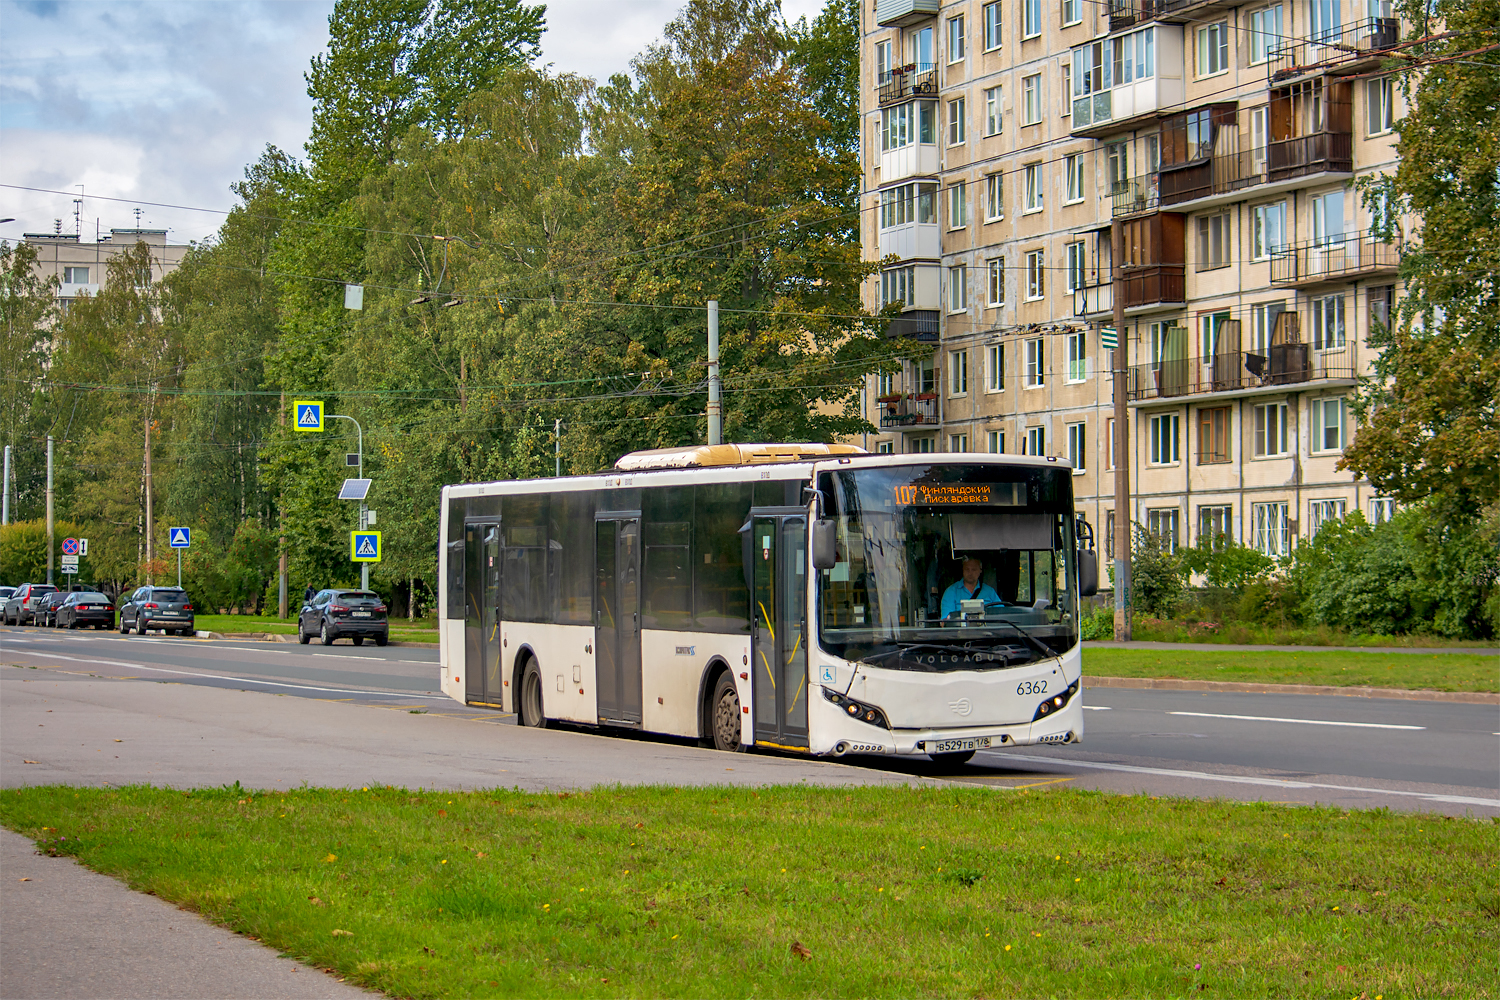 Saint Petersburg, Volgabus-5270.05 č. 6362